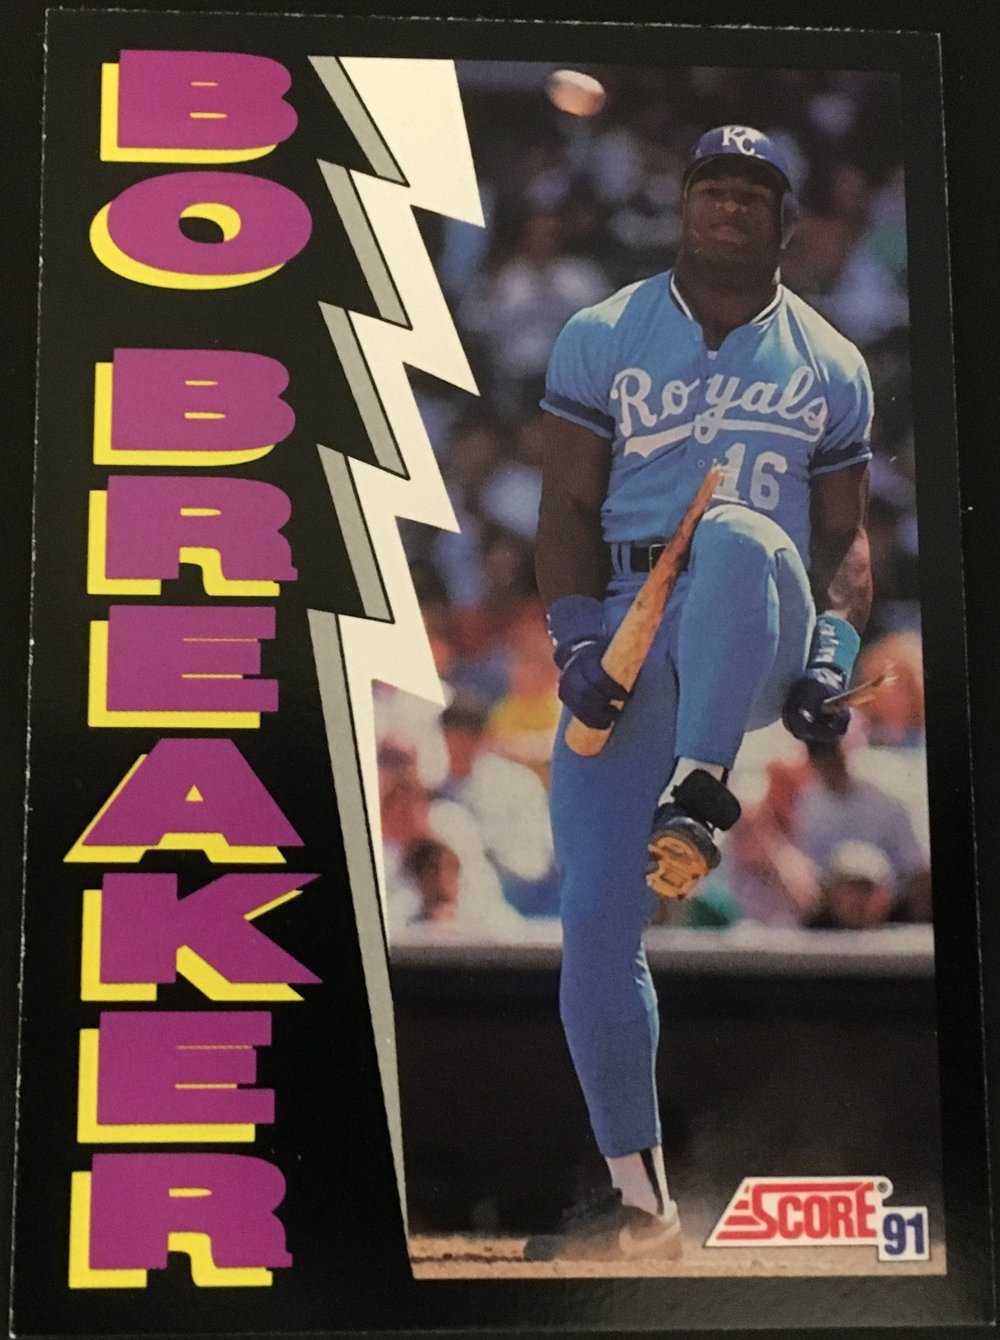 Bo Jackson Upper Deck baseball card